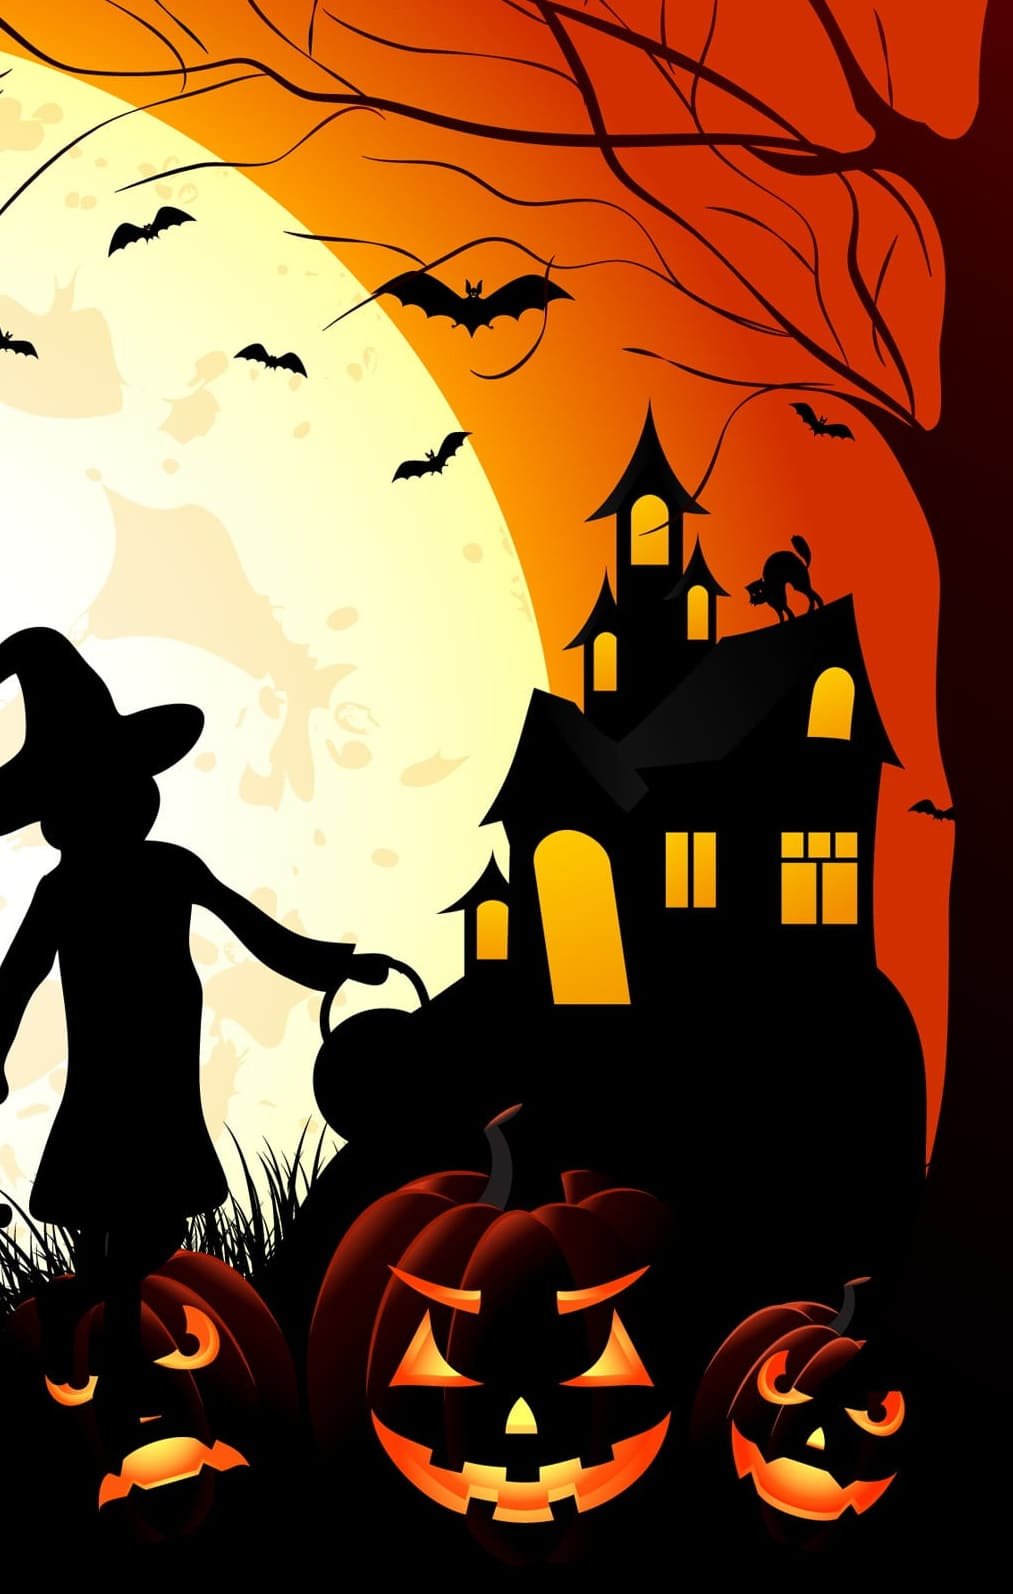 Halloween themed art wallpaper vector art silhouette art and craft